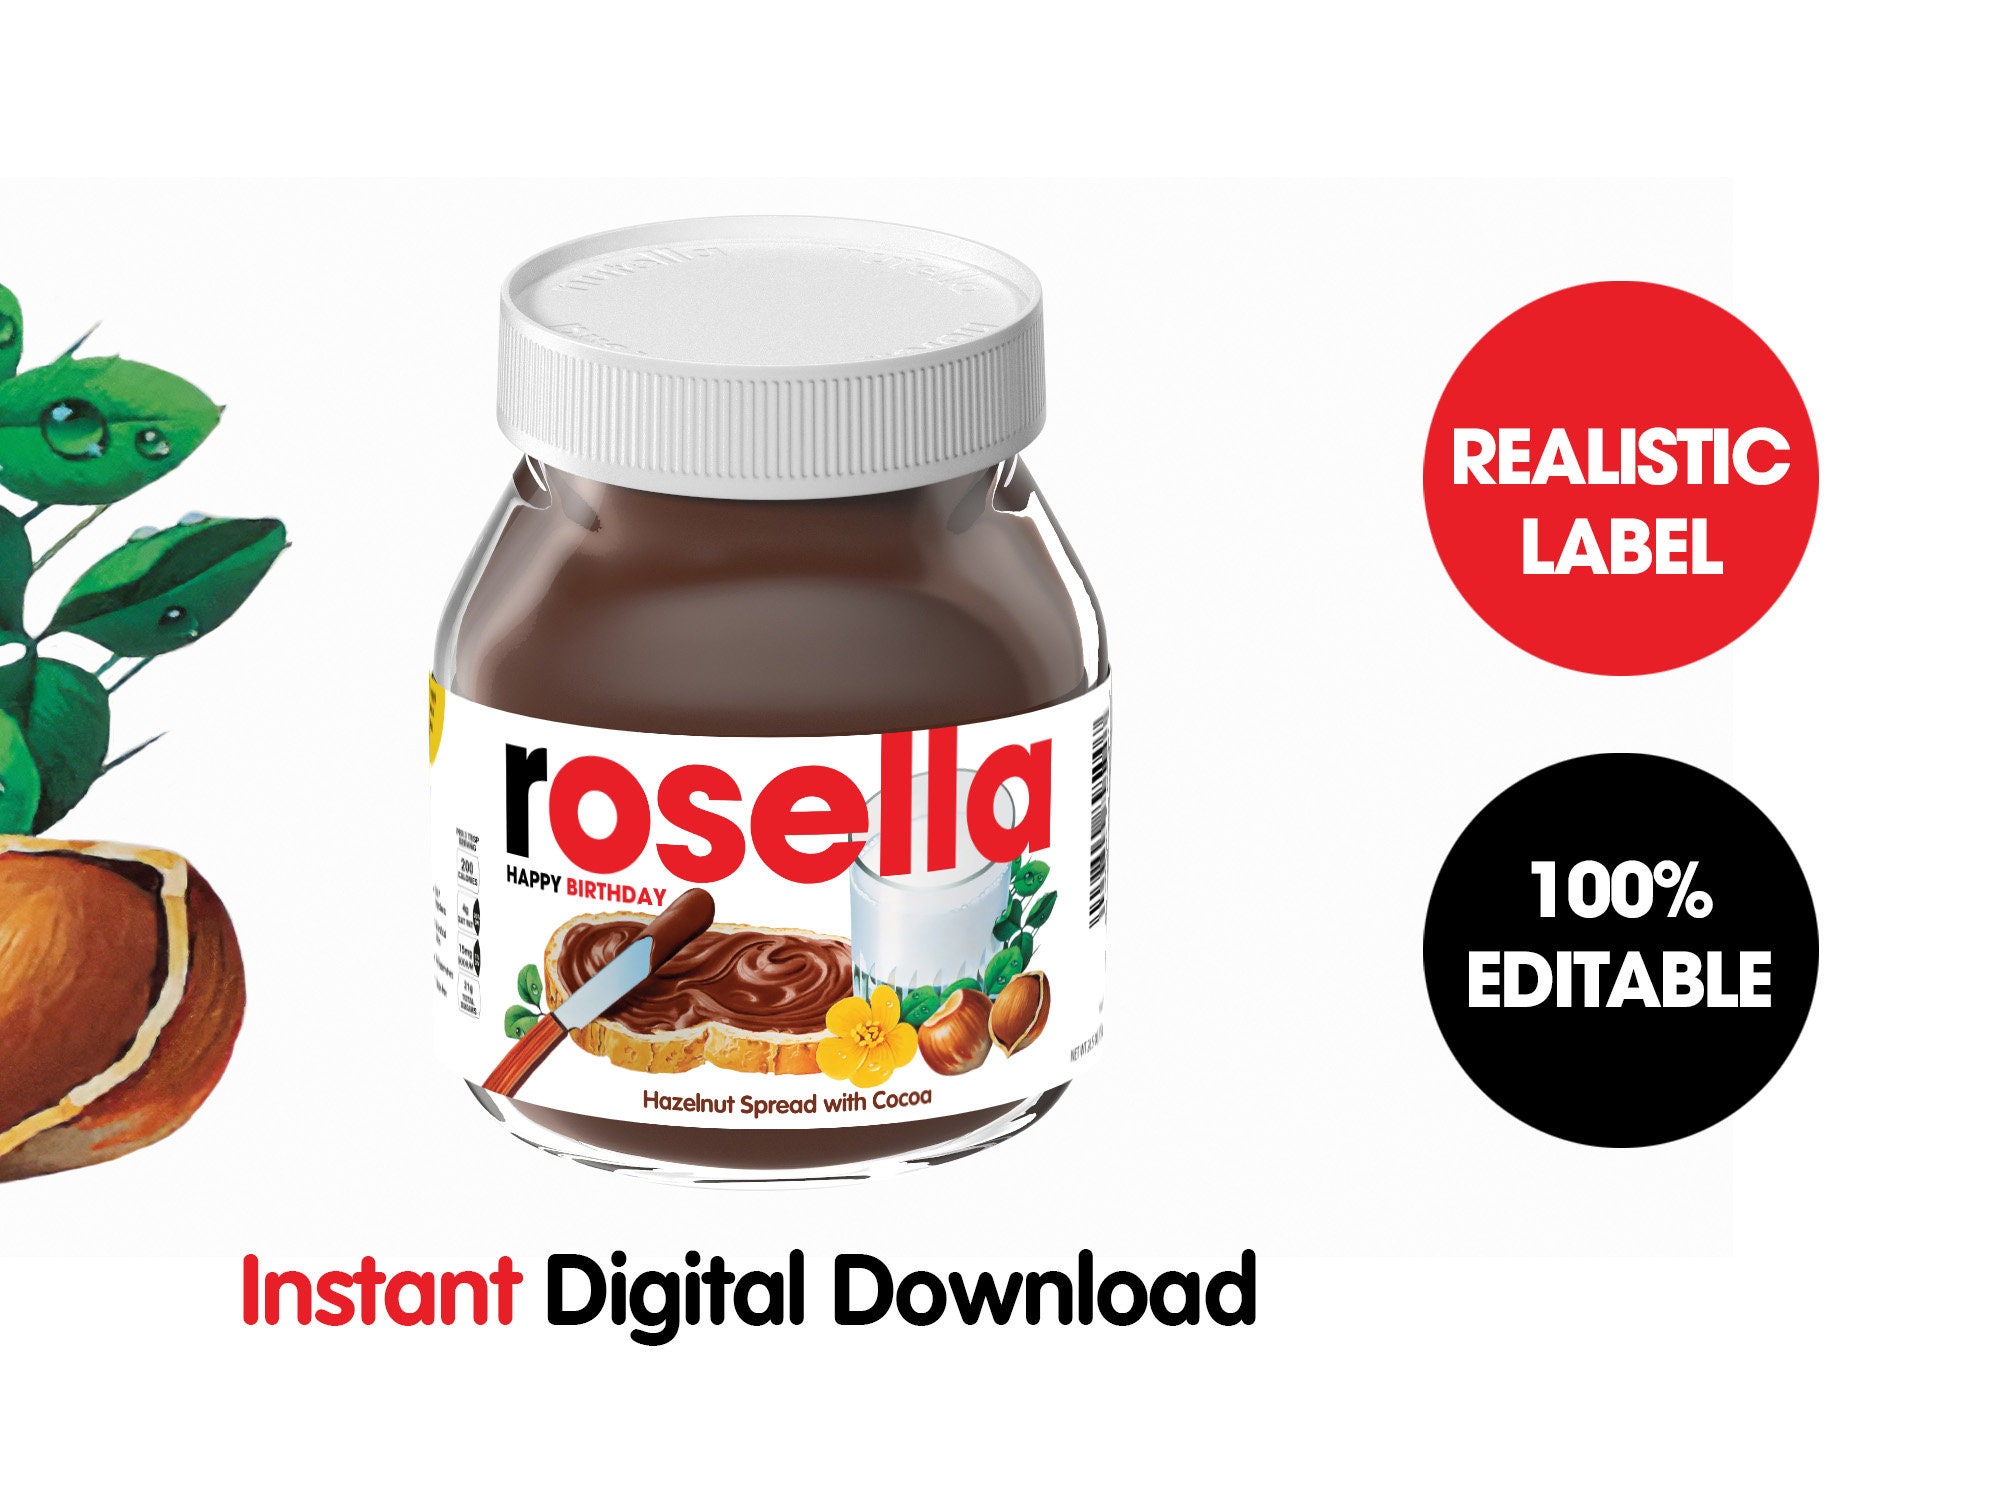 AMA Nutella Templates Combo Includes Mini Nutella 25g , Nutella and Go and  Nutella Blister Template. -  Israel